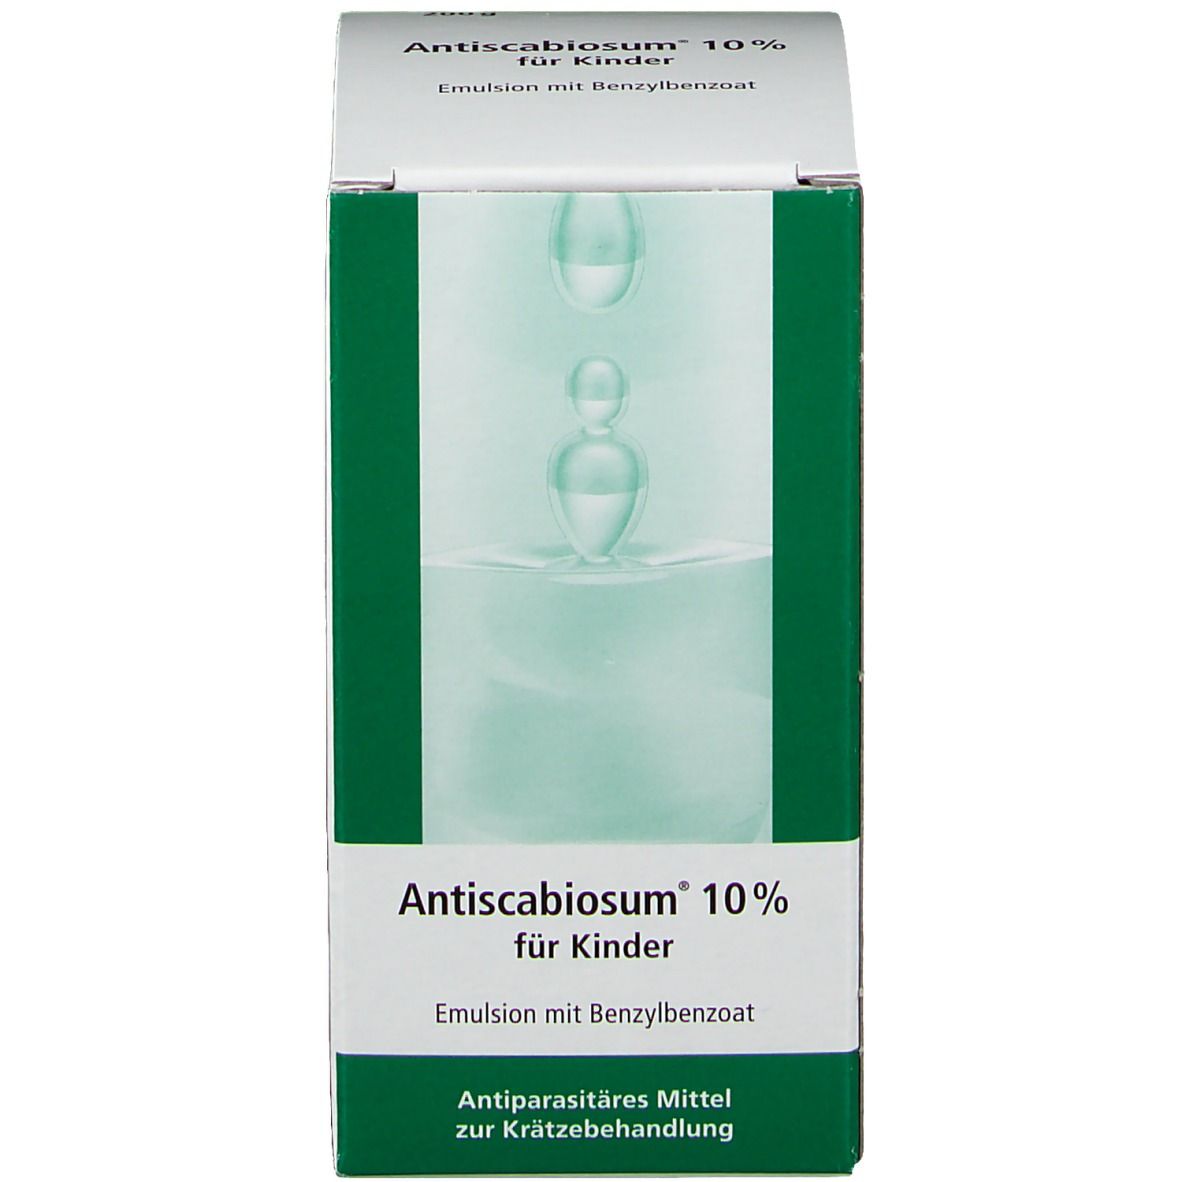 Antiscabiosum® 10 % für Kinder